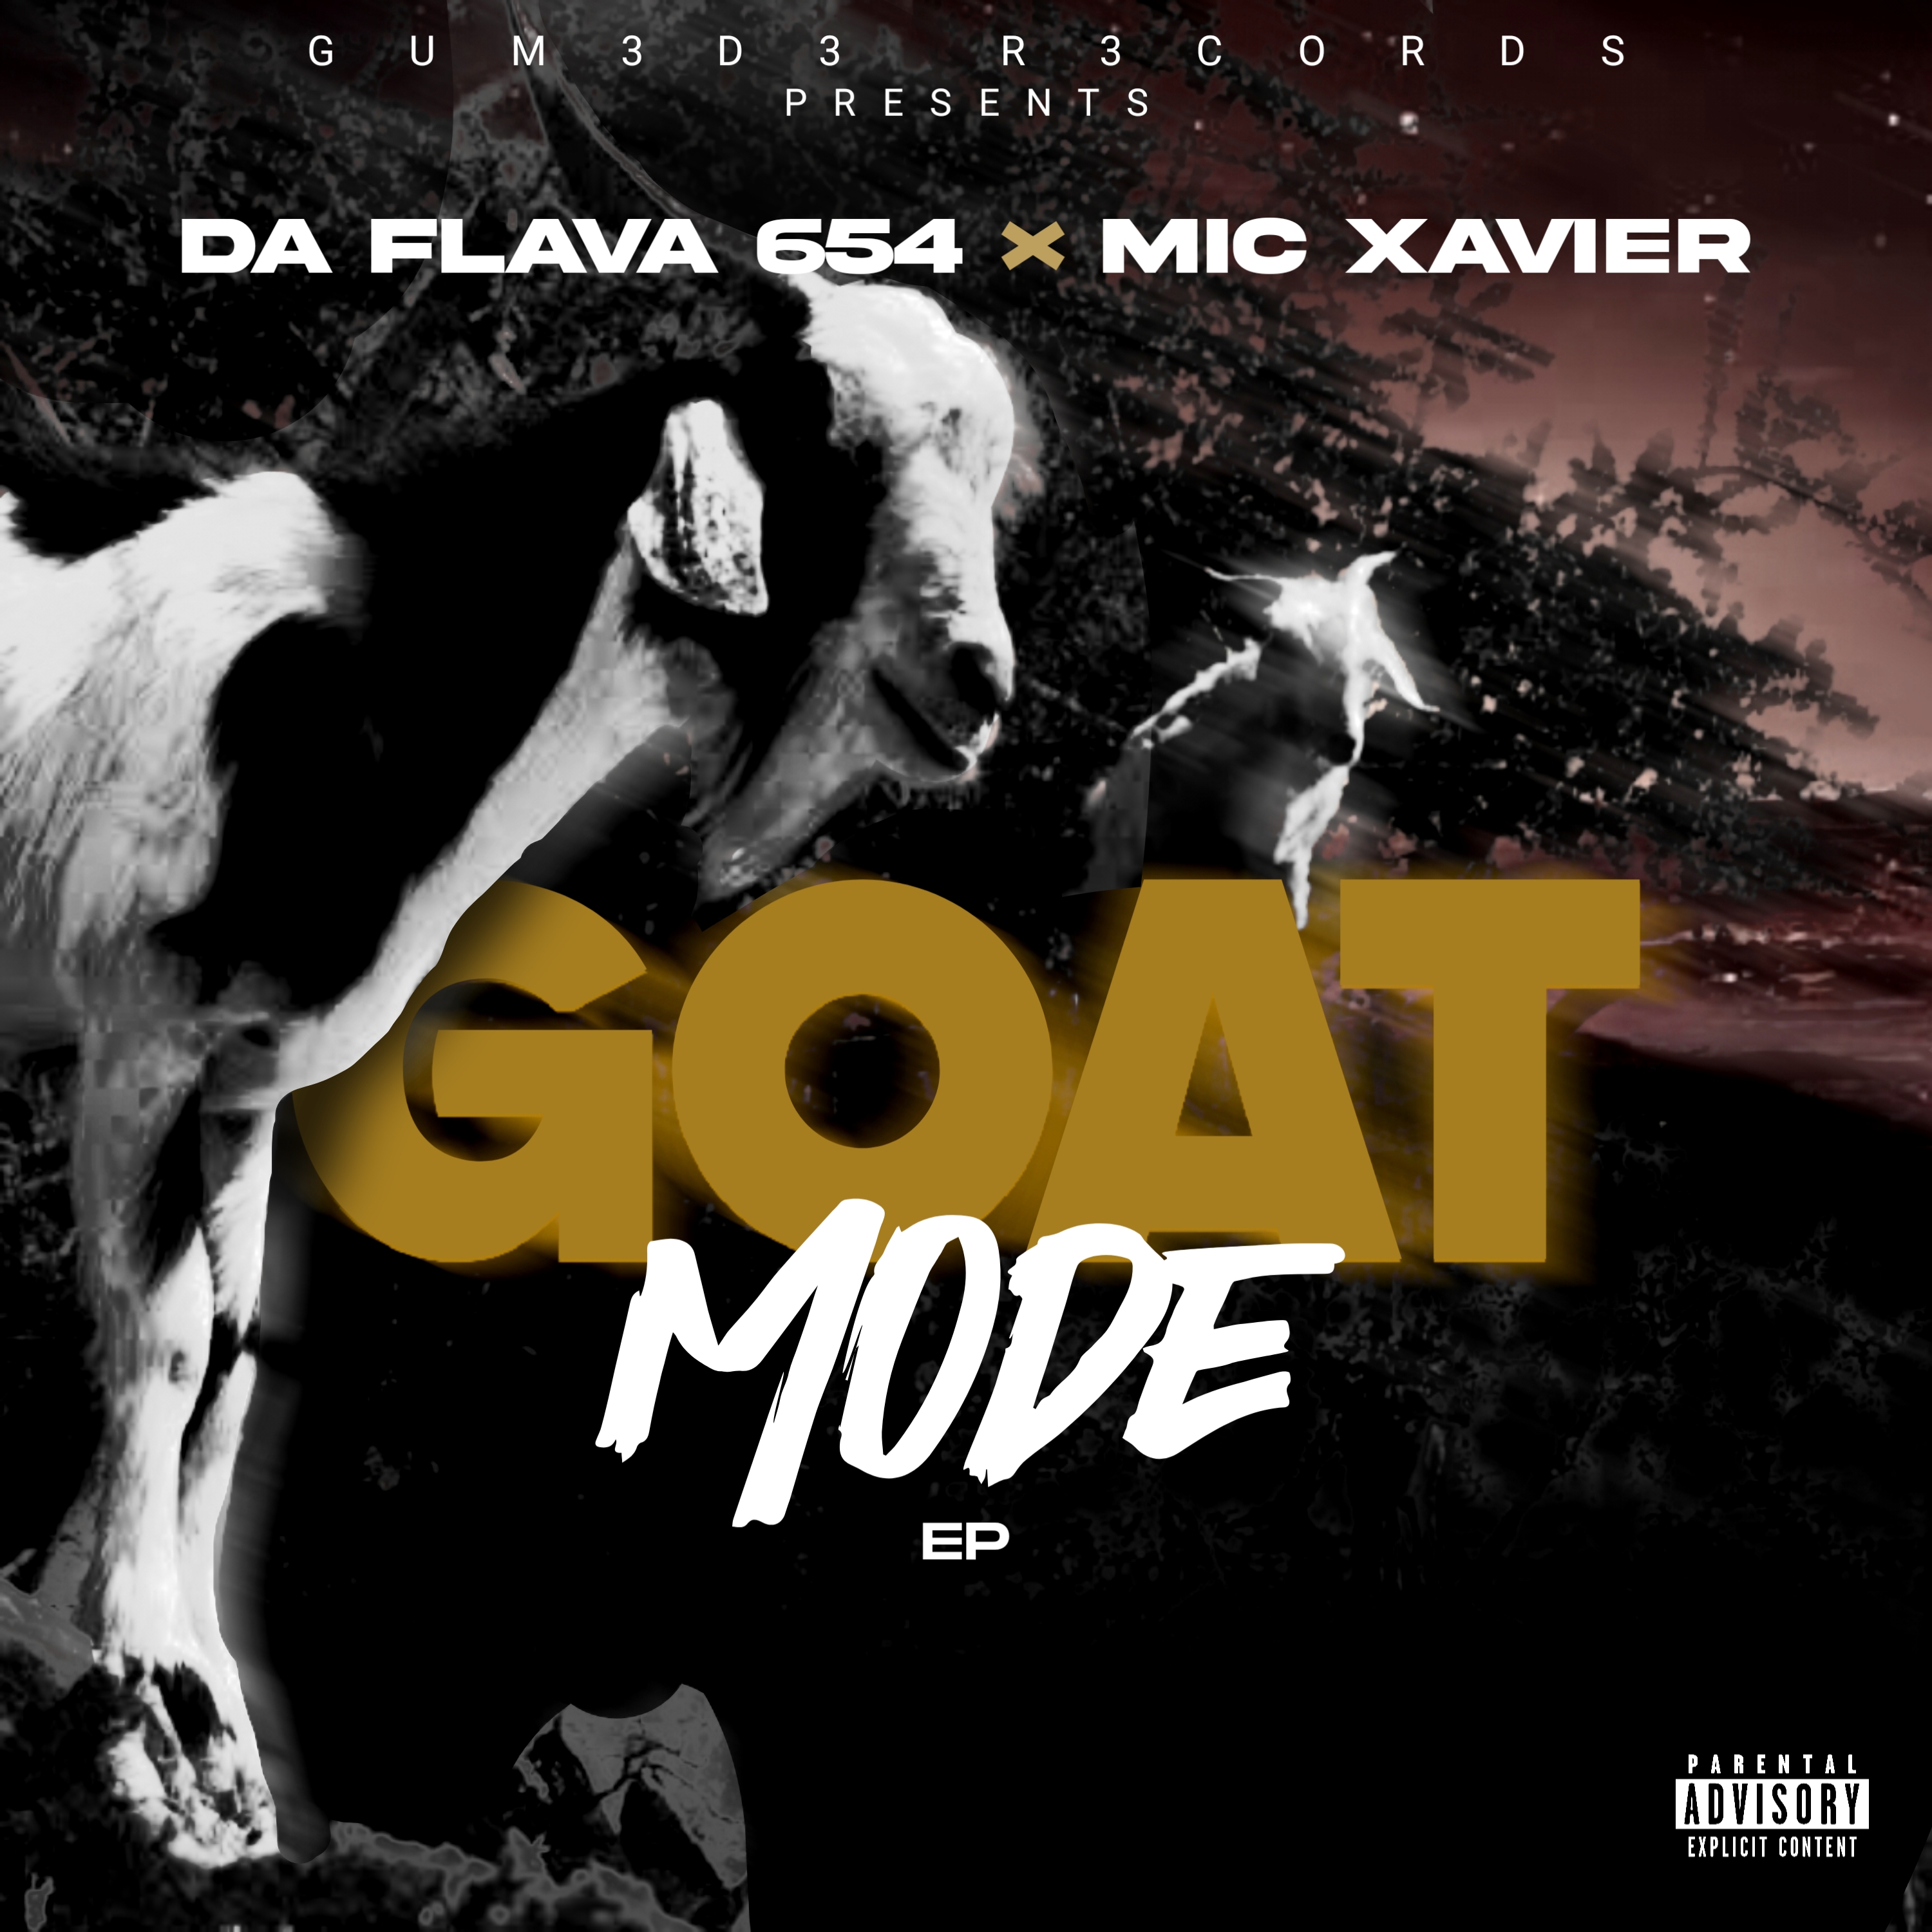 Goat Mode (Ft Mic Xavier)